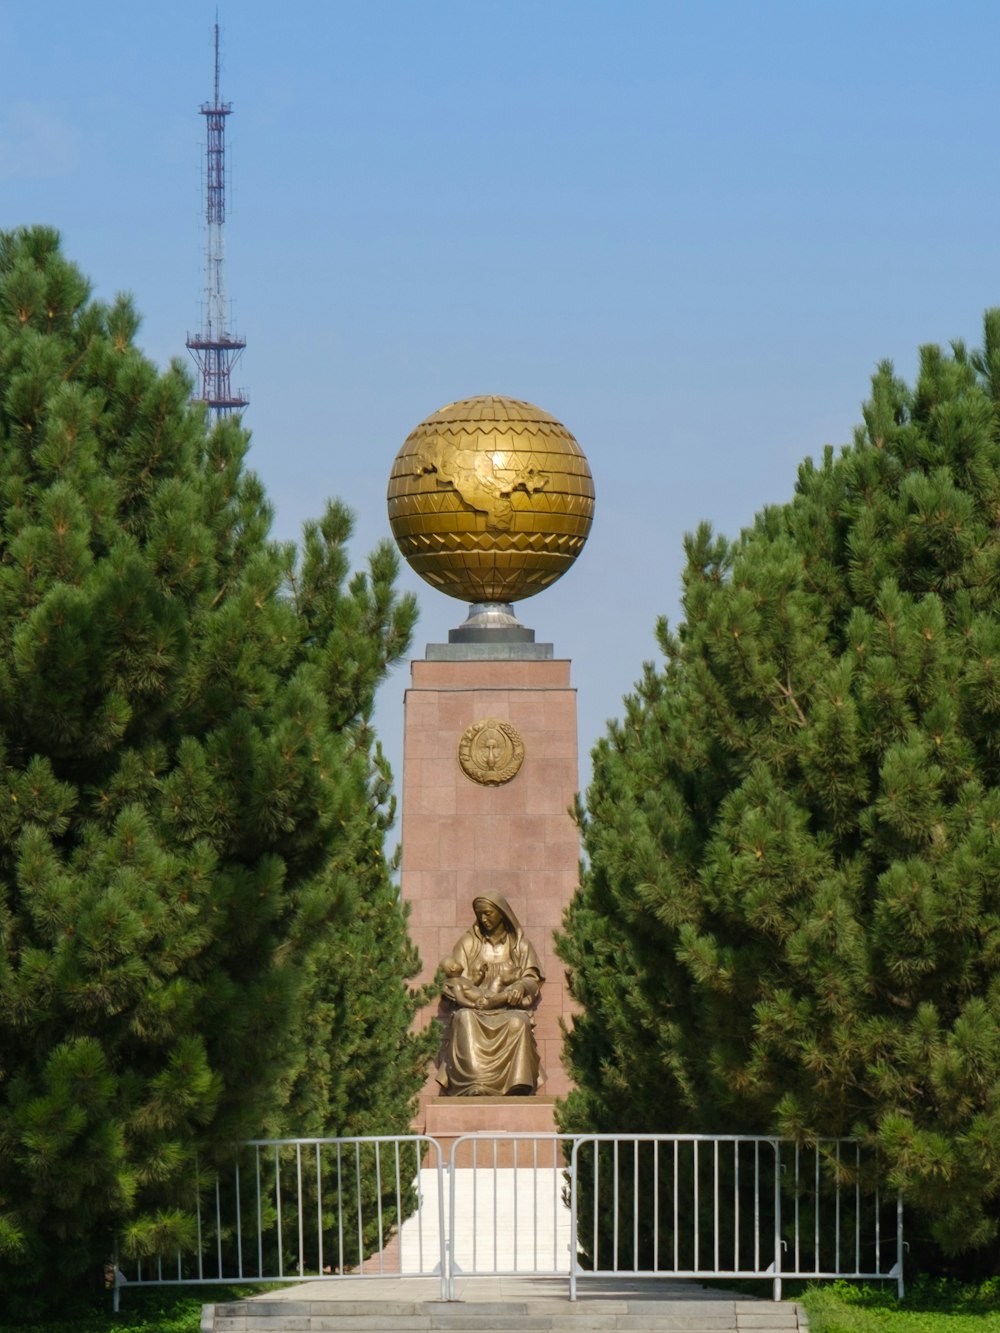 Estatua de la bola de oro cerca de los árboles verdes durante el día